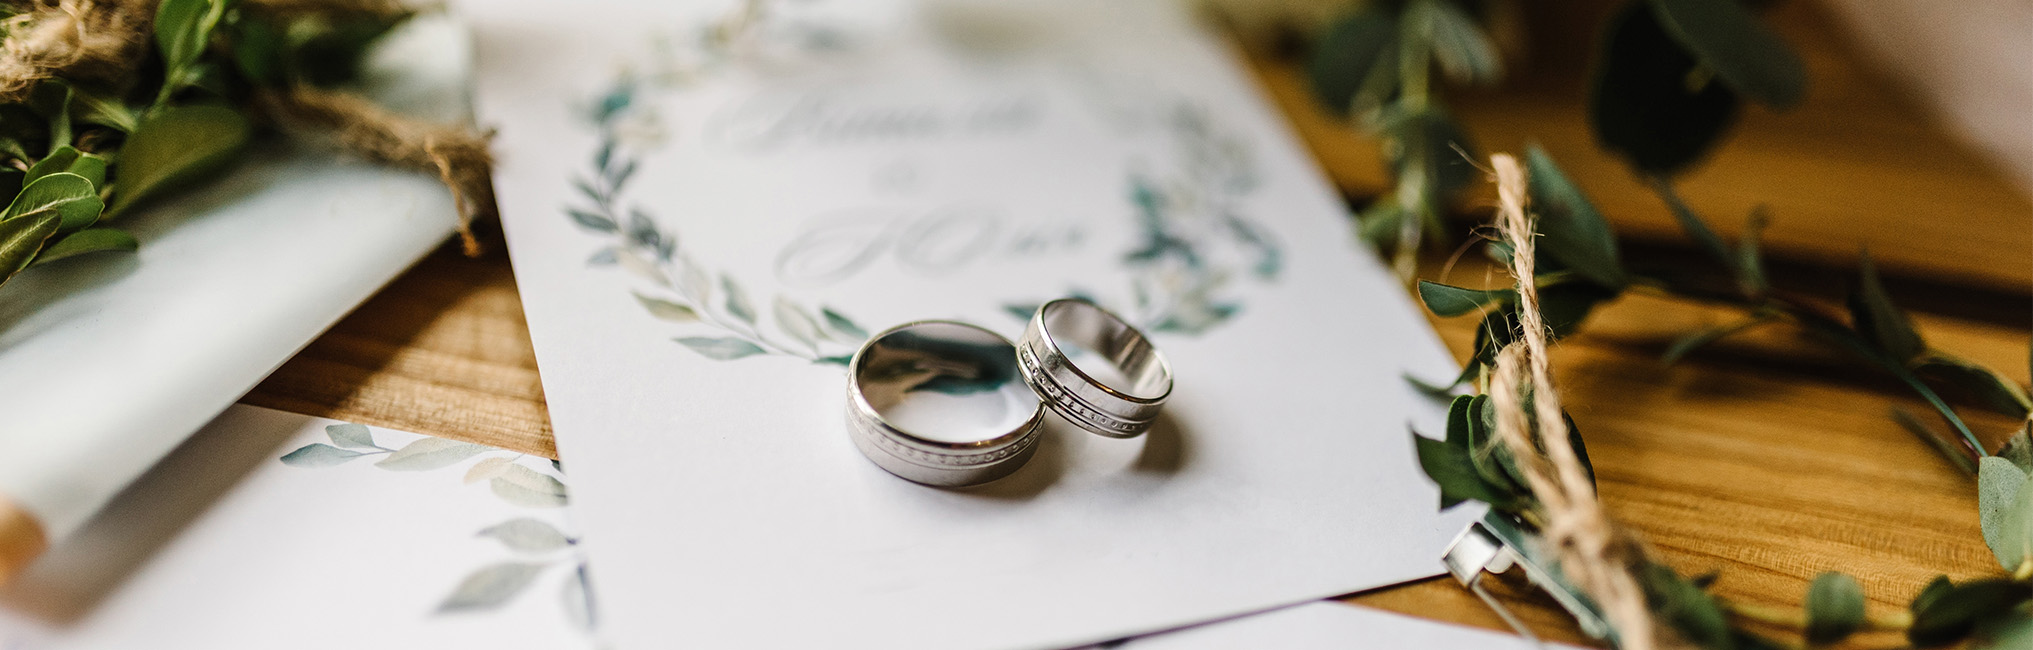 Blogs, inspiratie en informatie over trouwen